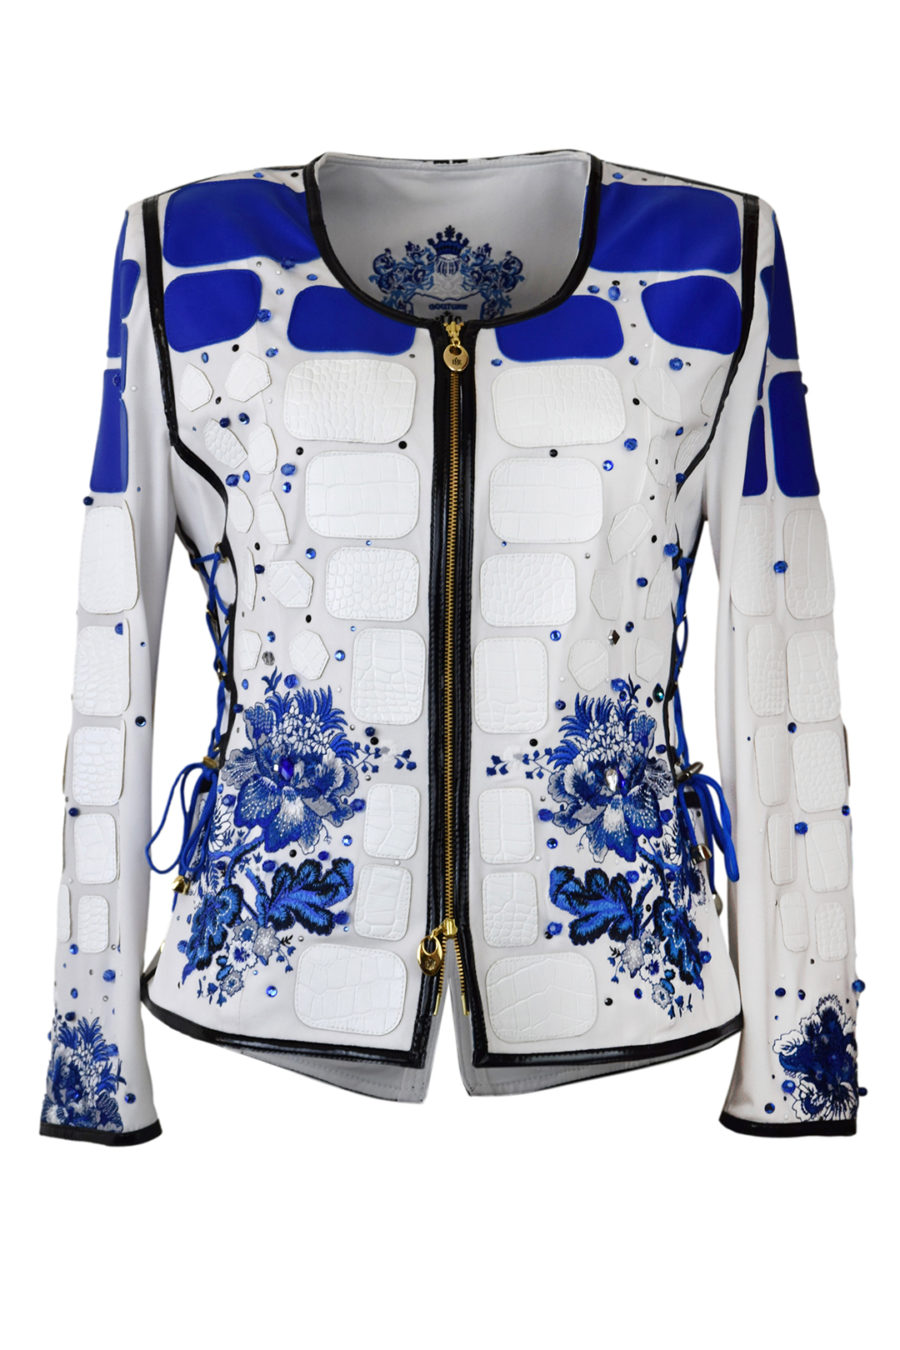 Haute Couture-Jacke mit "Paisley-embroidery", mit 76 Kristallen, Perlen und ca. 214 Hotfix Kristallen in Royalblue und Onyx